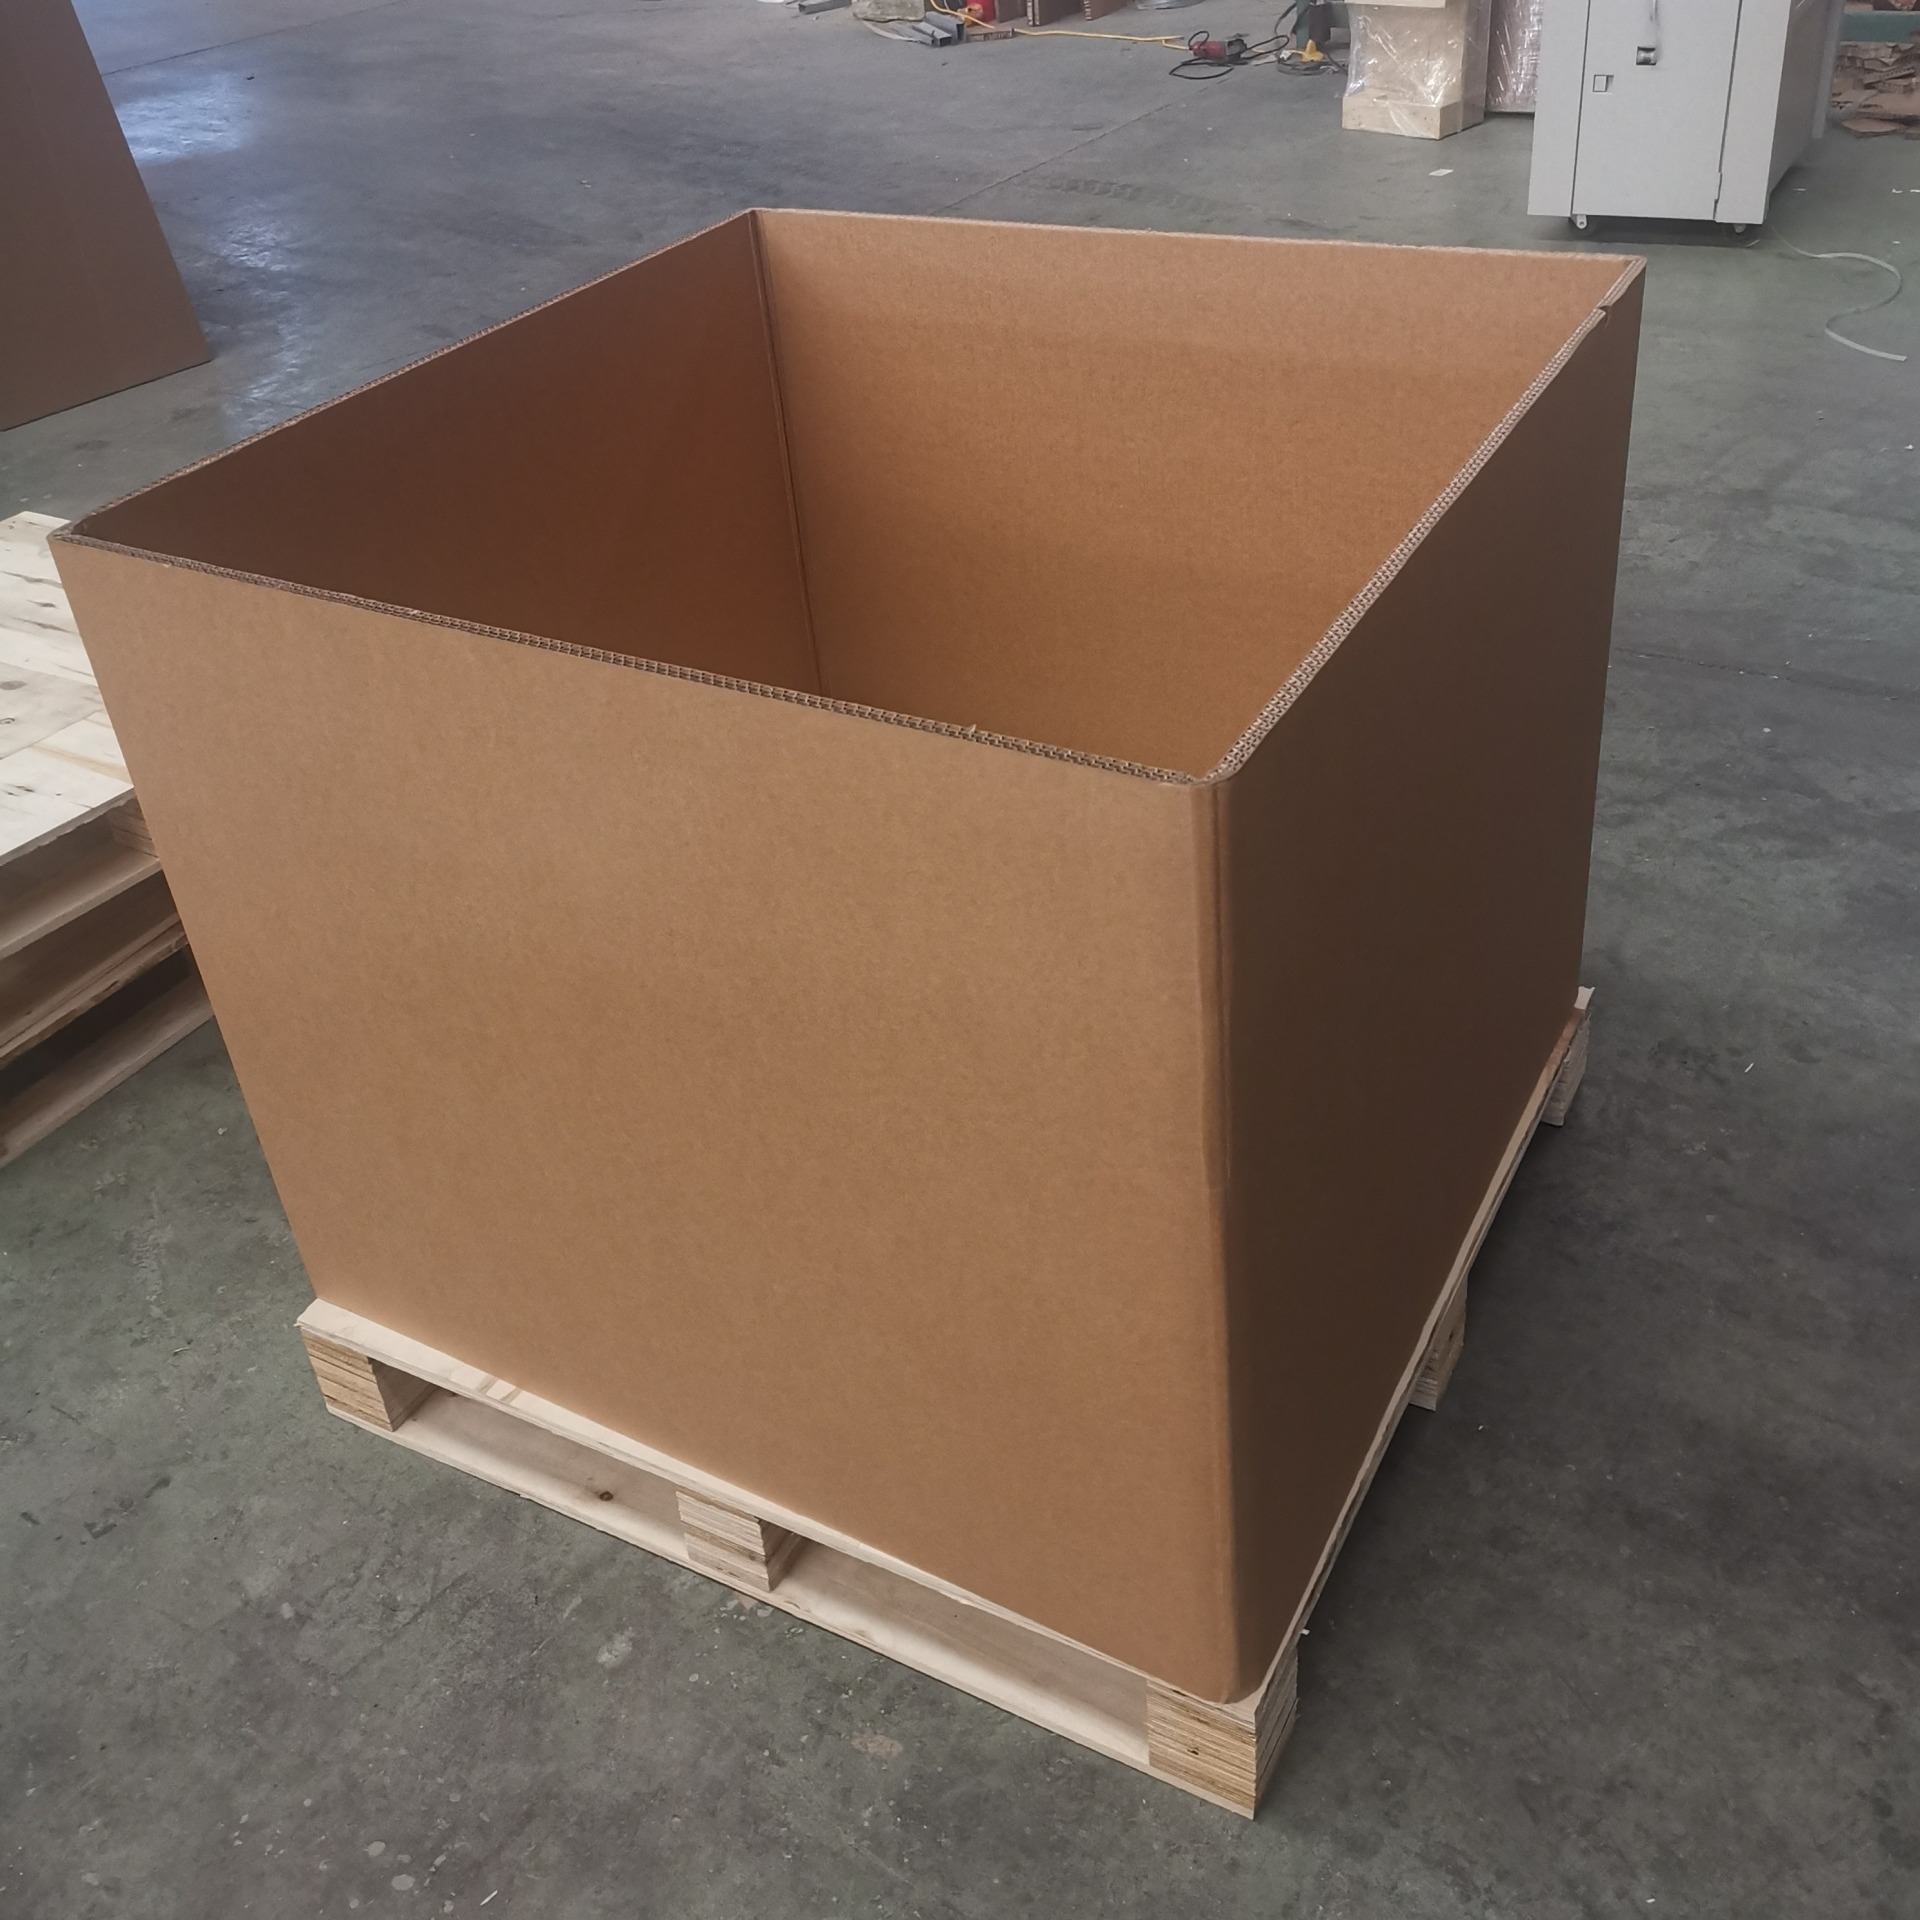 重型设备包装箱 重型轴包装箱 蜂窝板收纳箱 京东龙达 支持定制图片